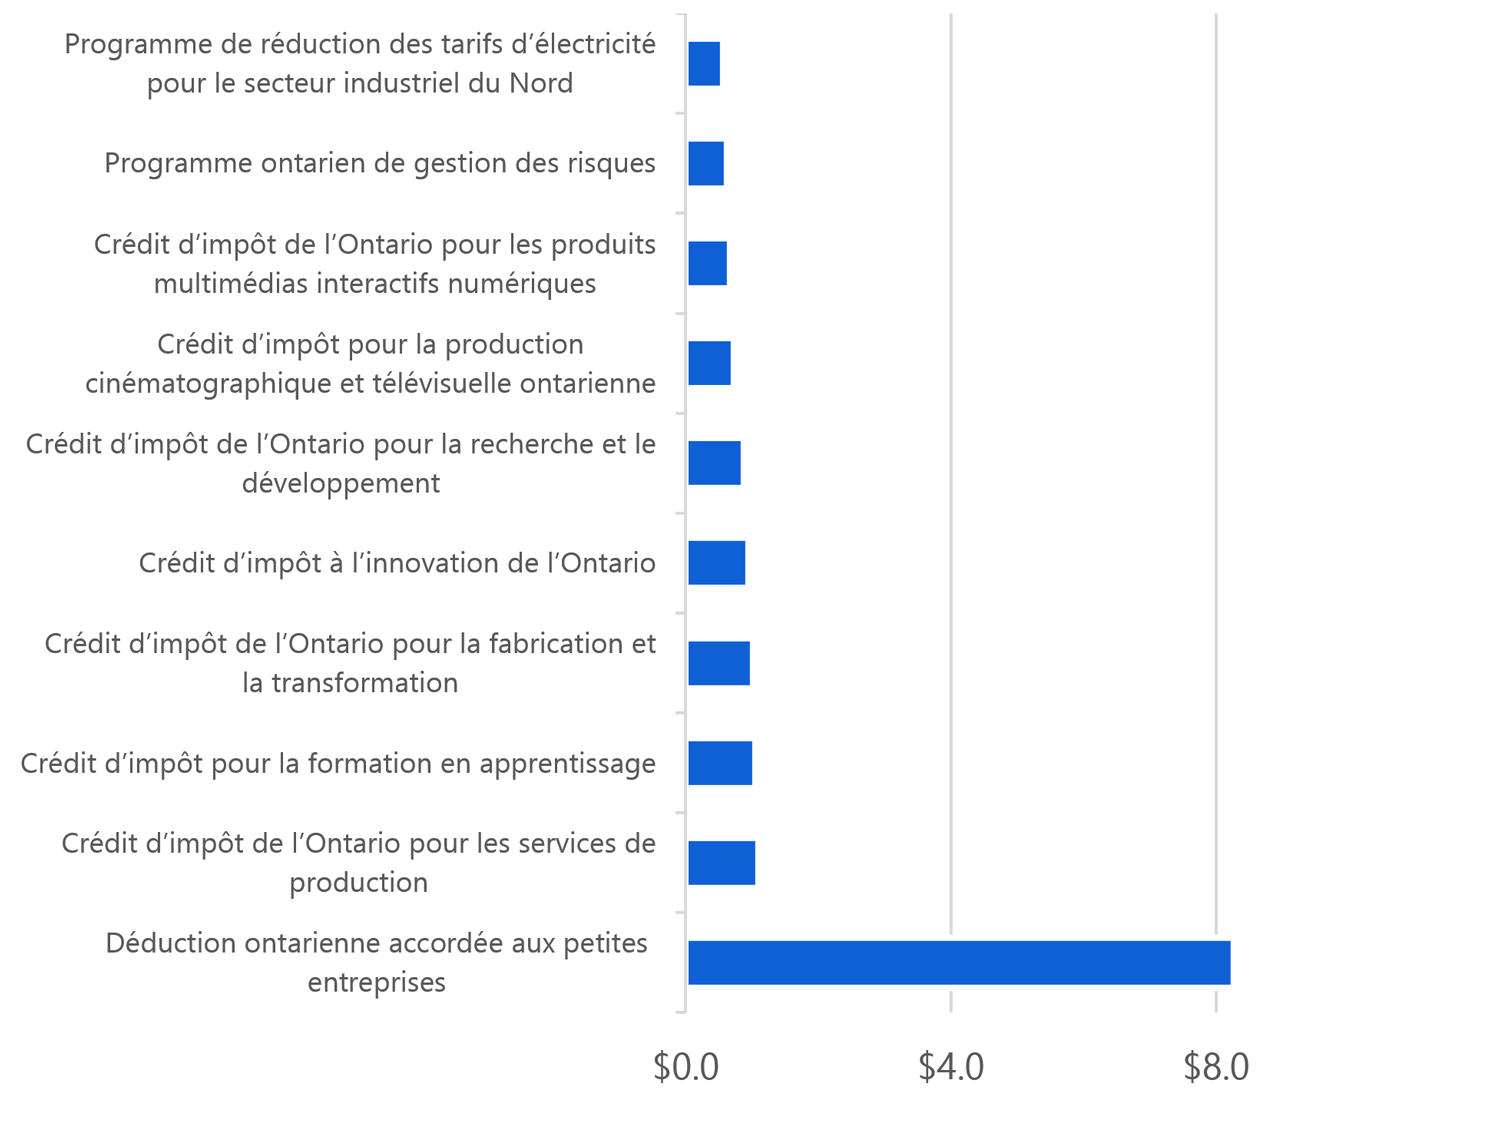 Dix principaux programmes de soutien aux entreprises selon les dépenses totales (G$), de 2012-2013 à 2016-2017